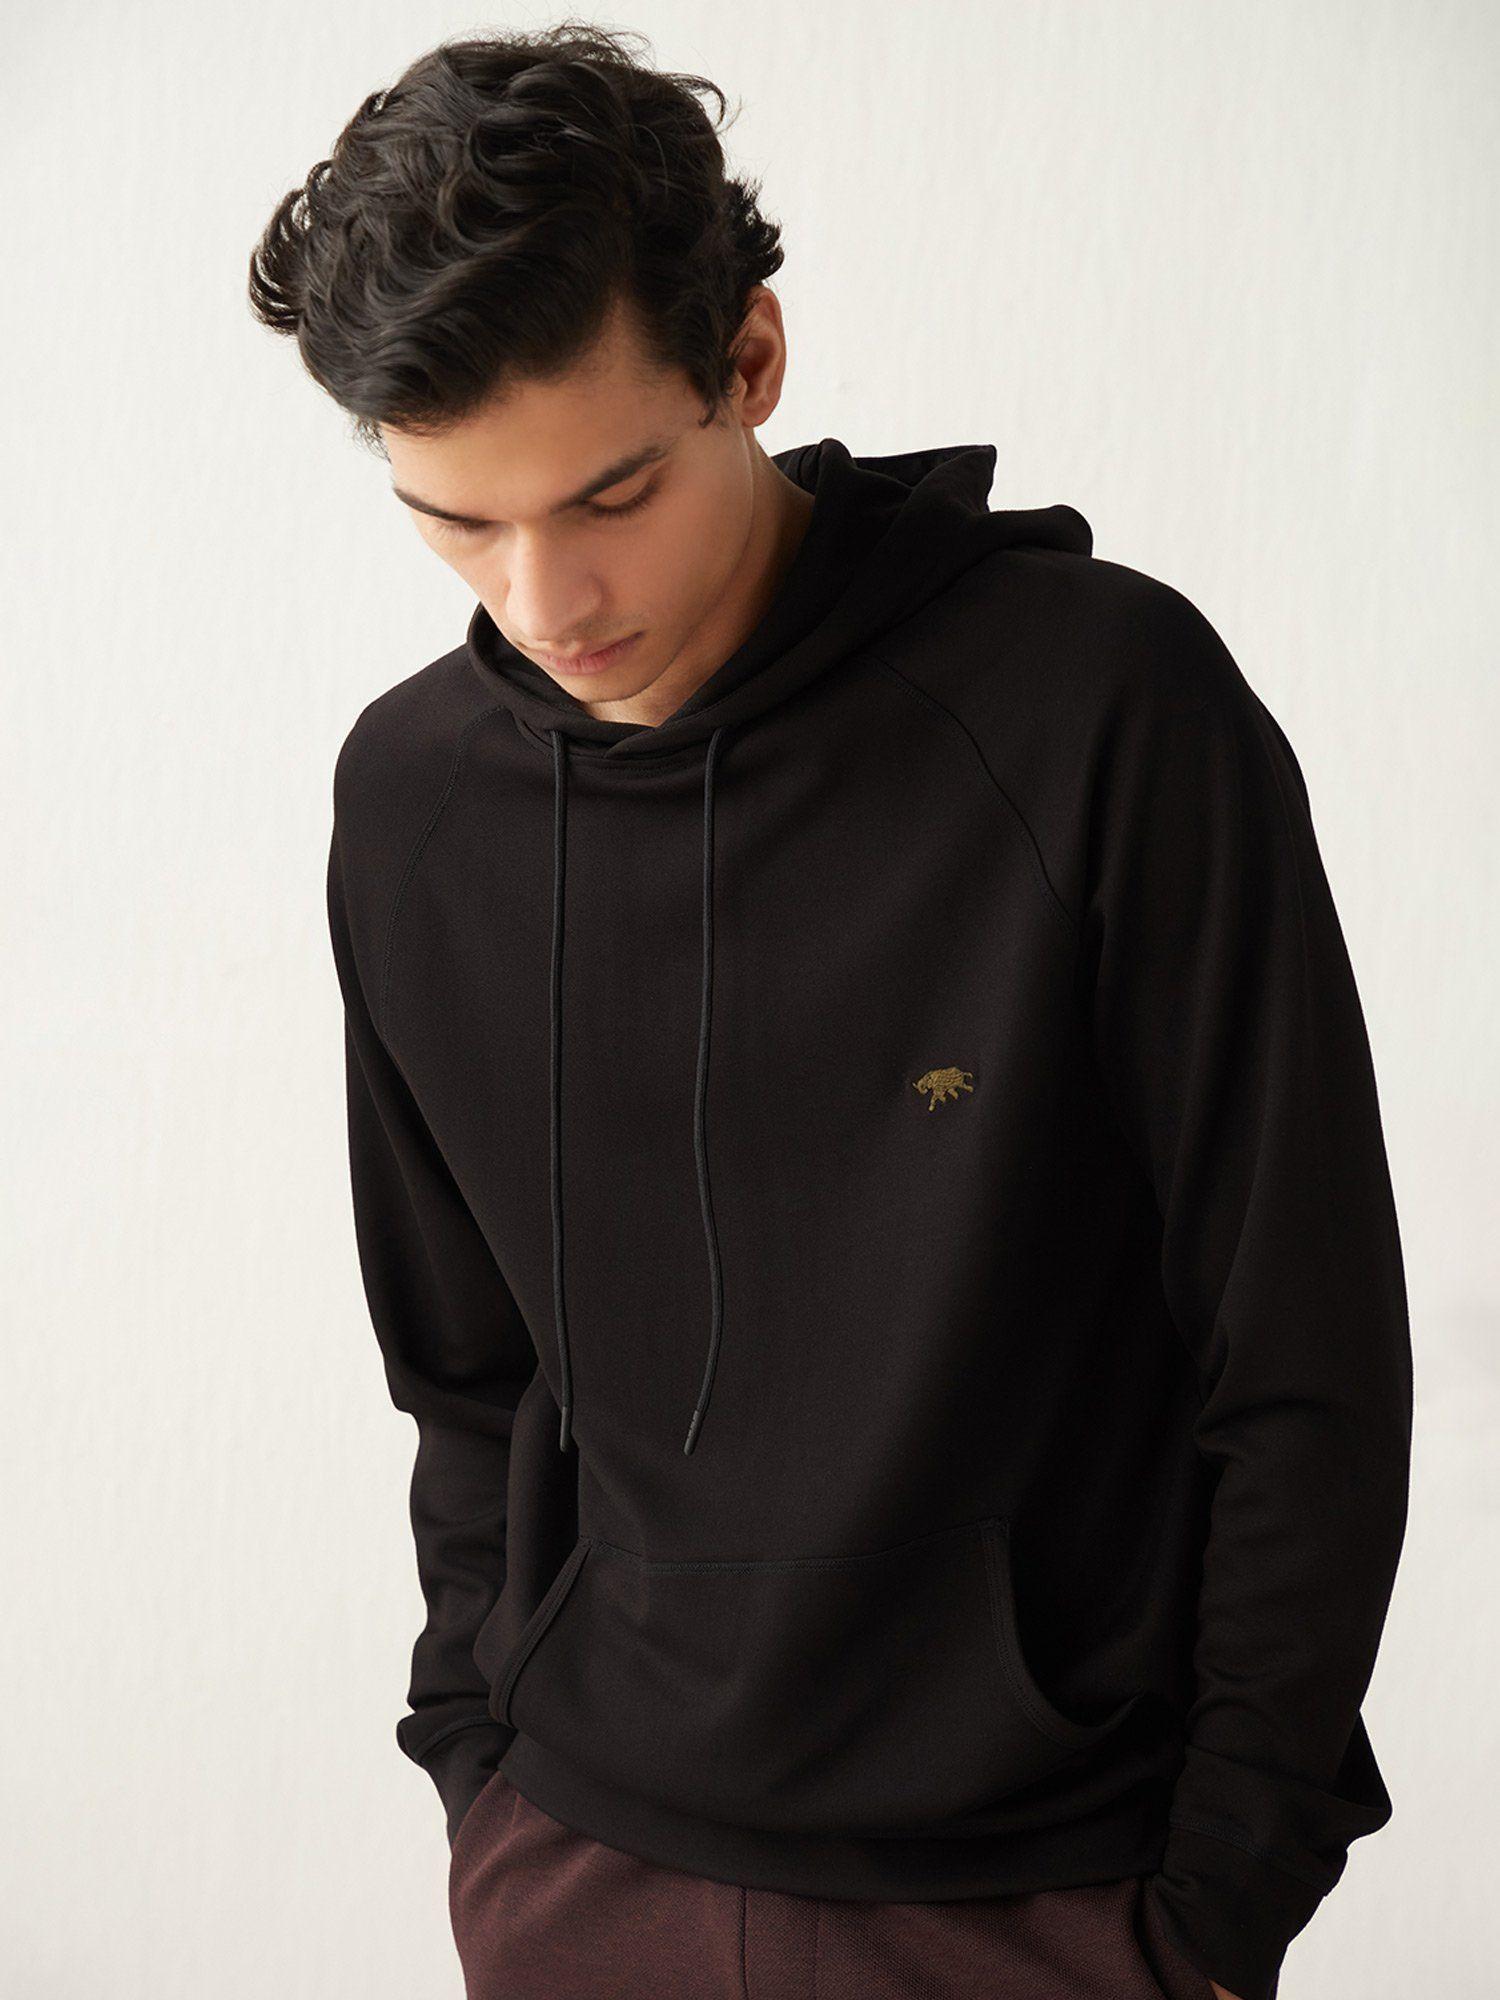 black onyx hoodie